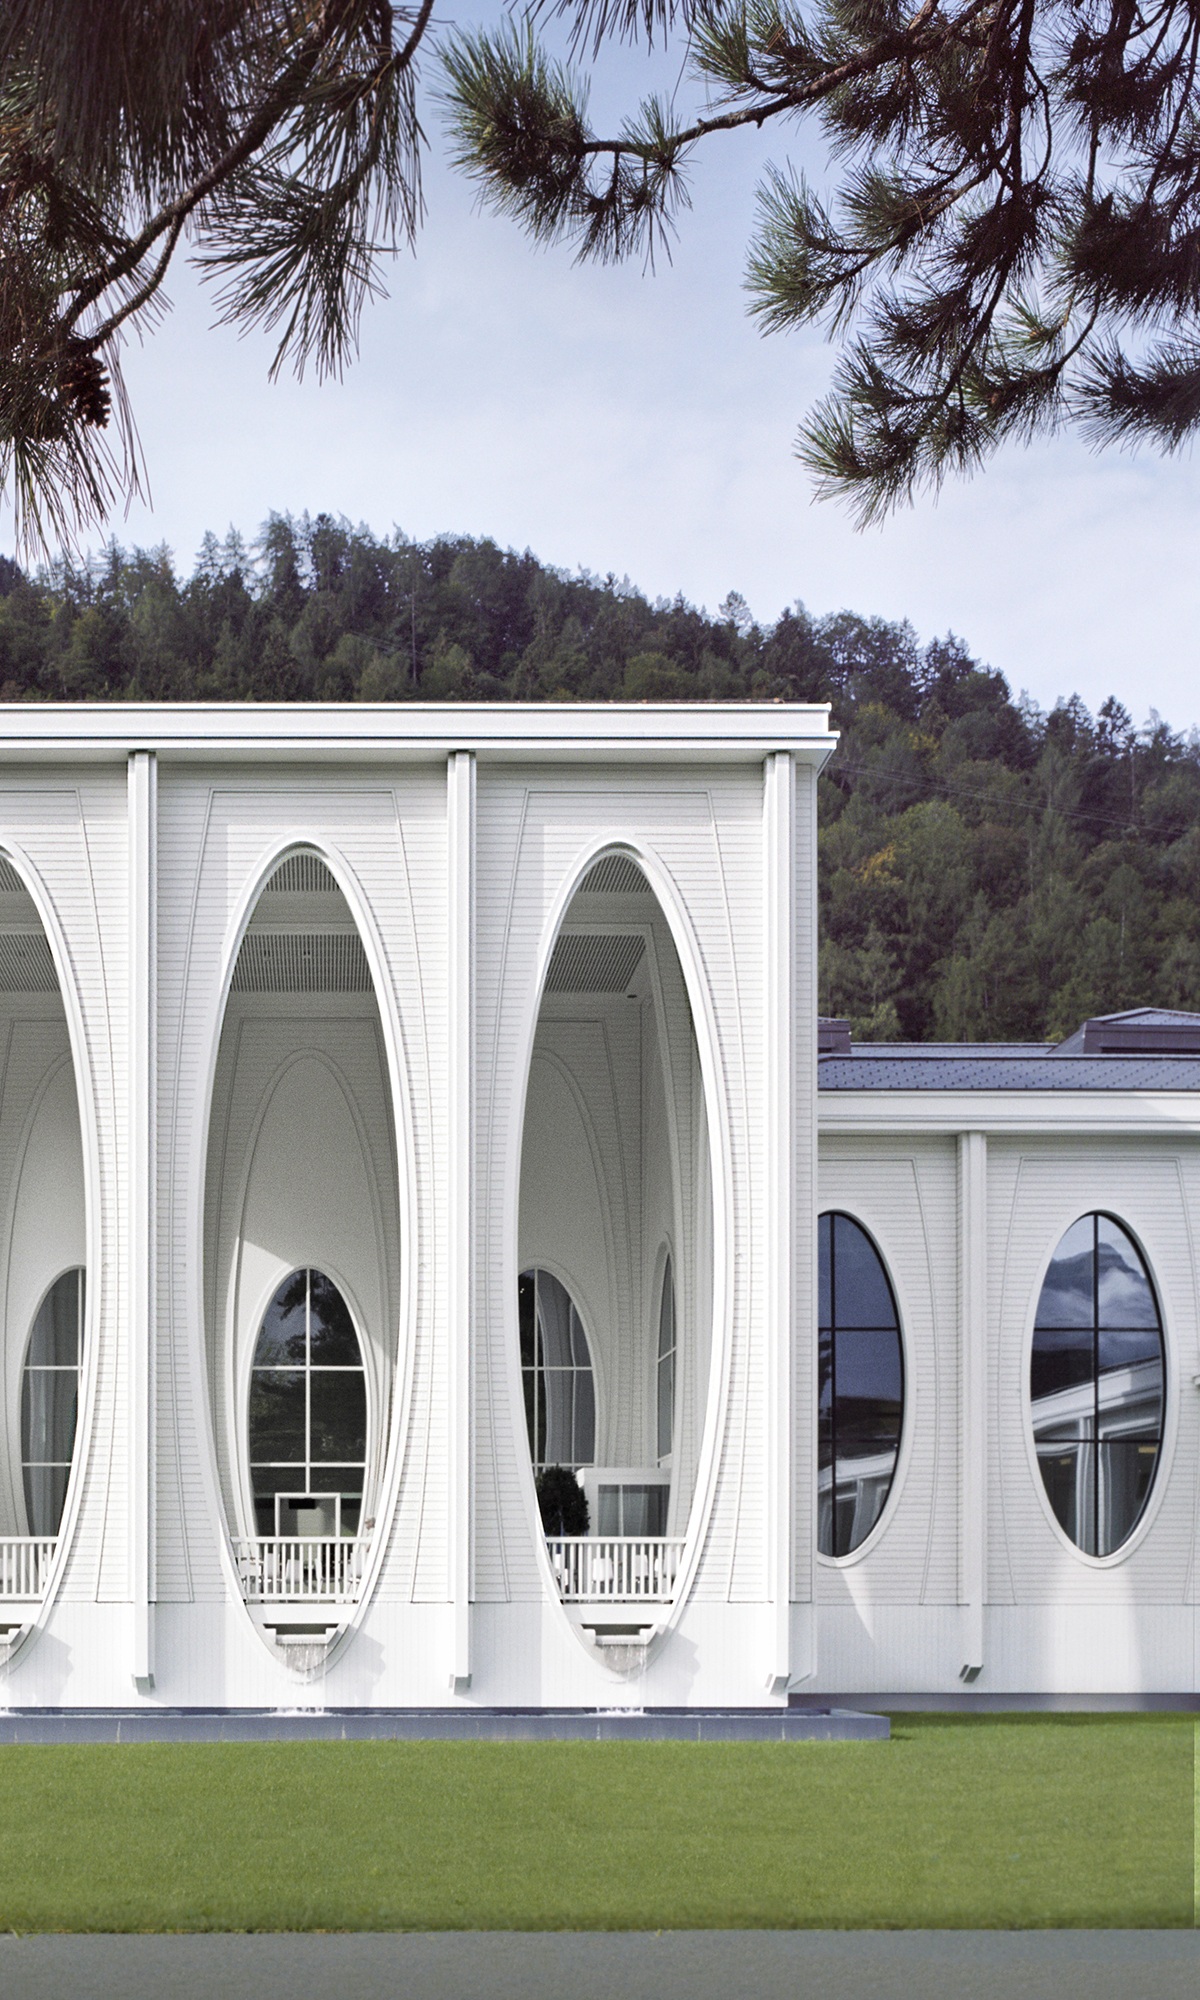 Aussenansicht der Tamina Therme mit Säulengang und Fassade in Weiss.